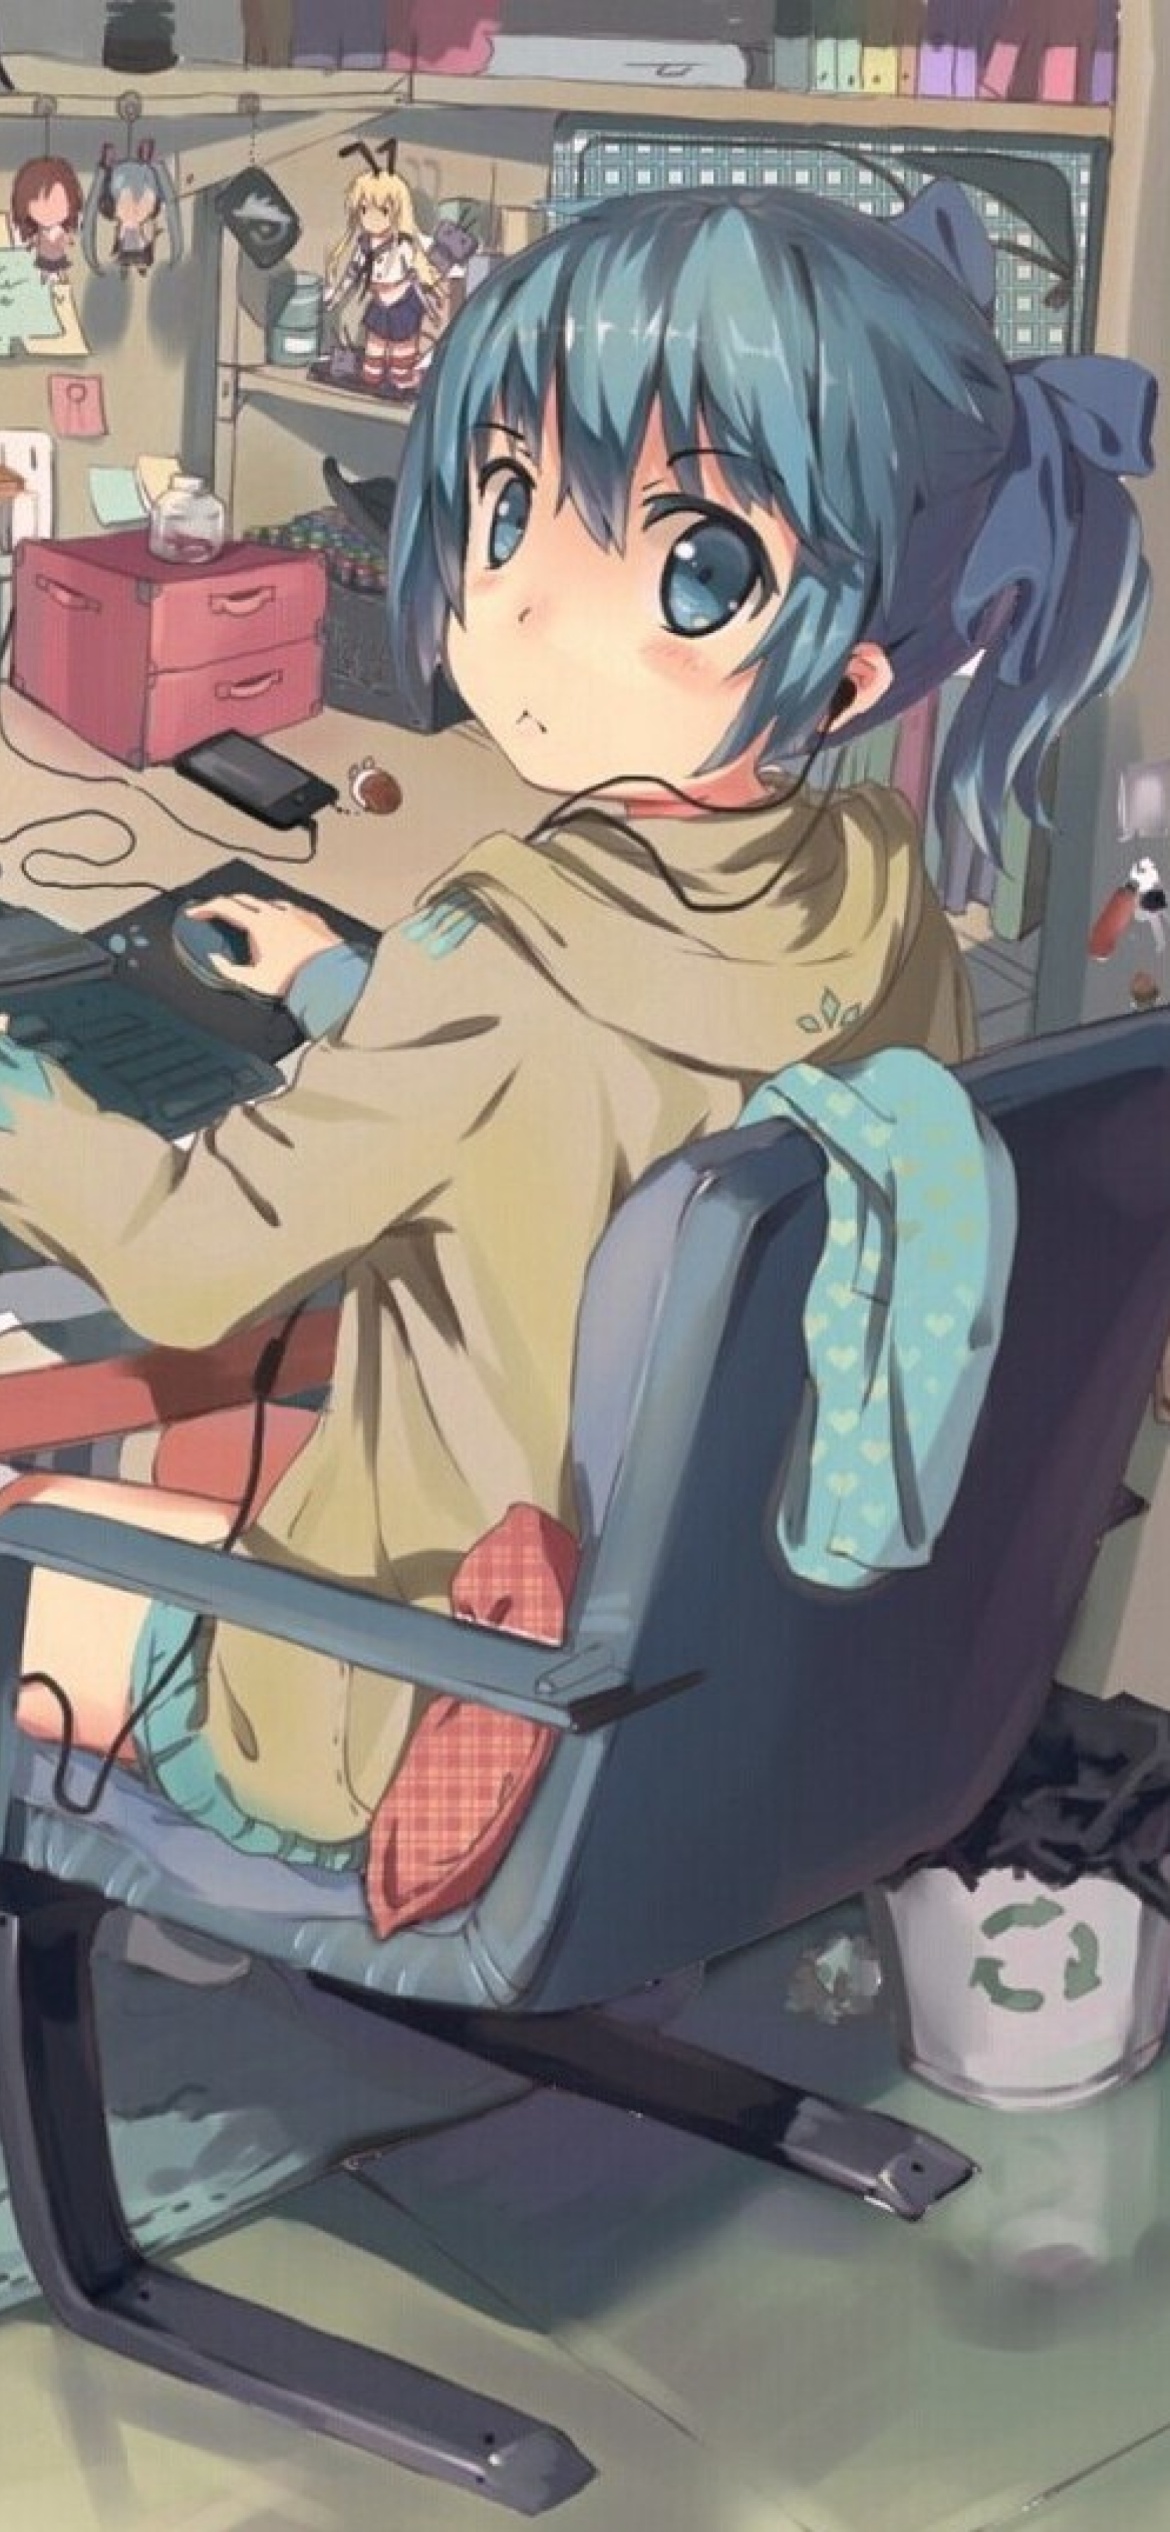 Anime girl Computer designer wallpaper 1170x2532